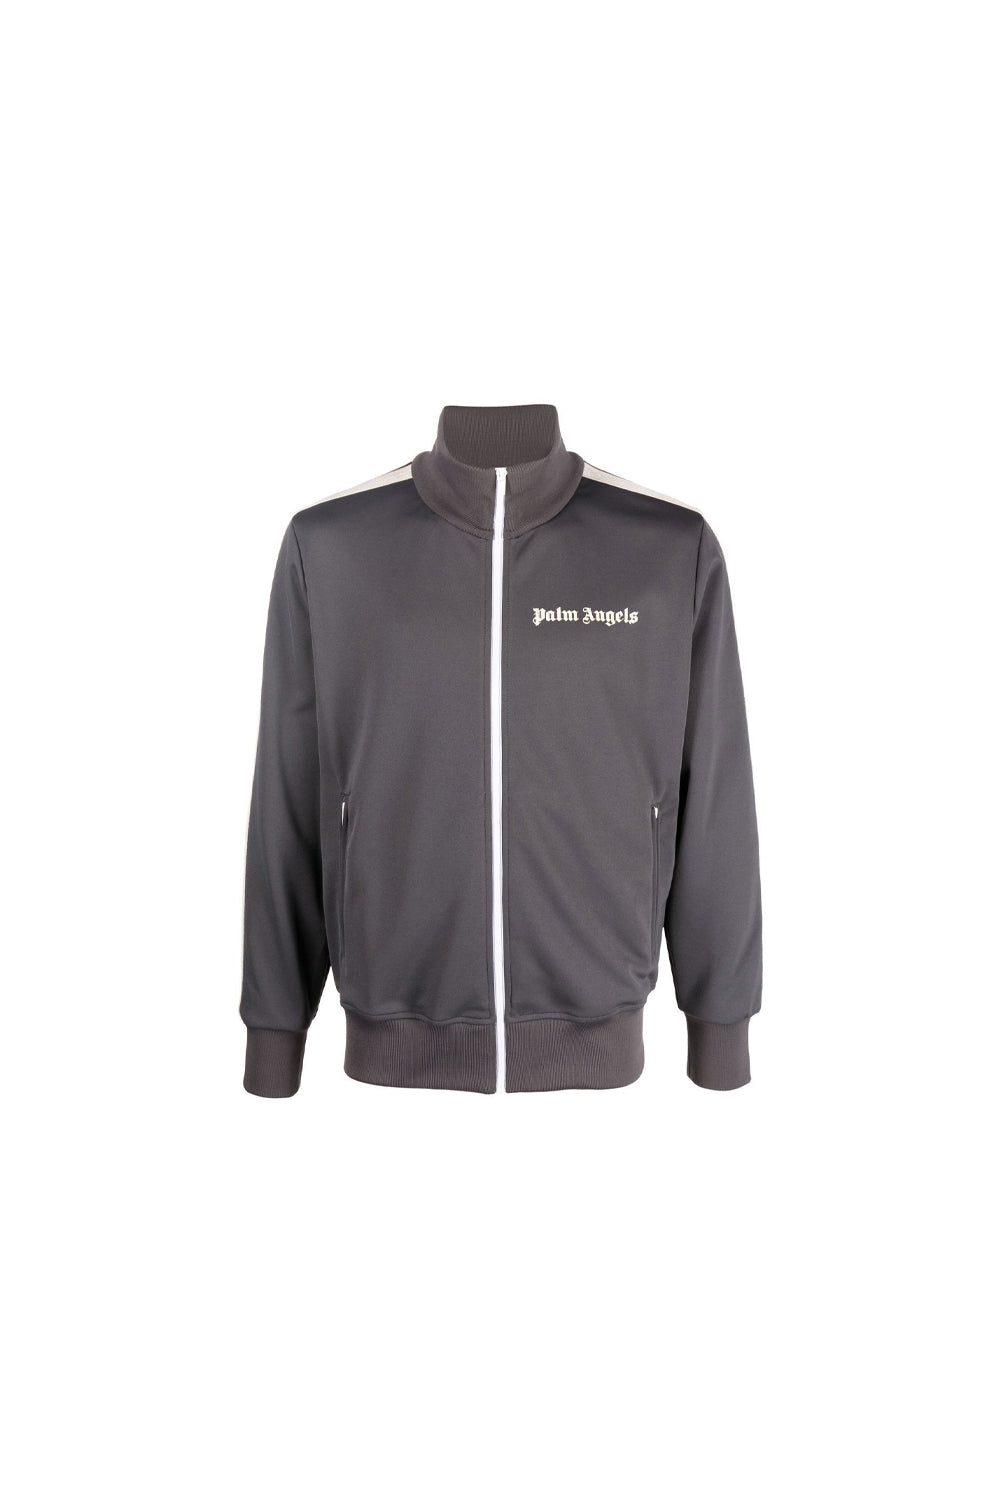 Palm Angels Classic side-stripe zipped jacket dark grey